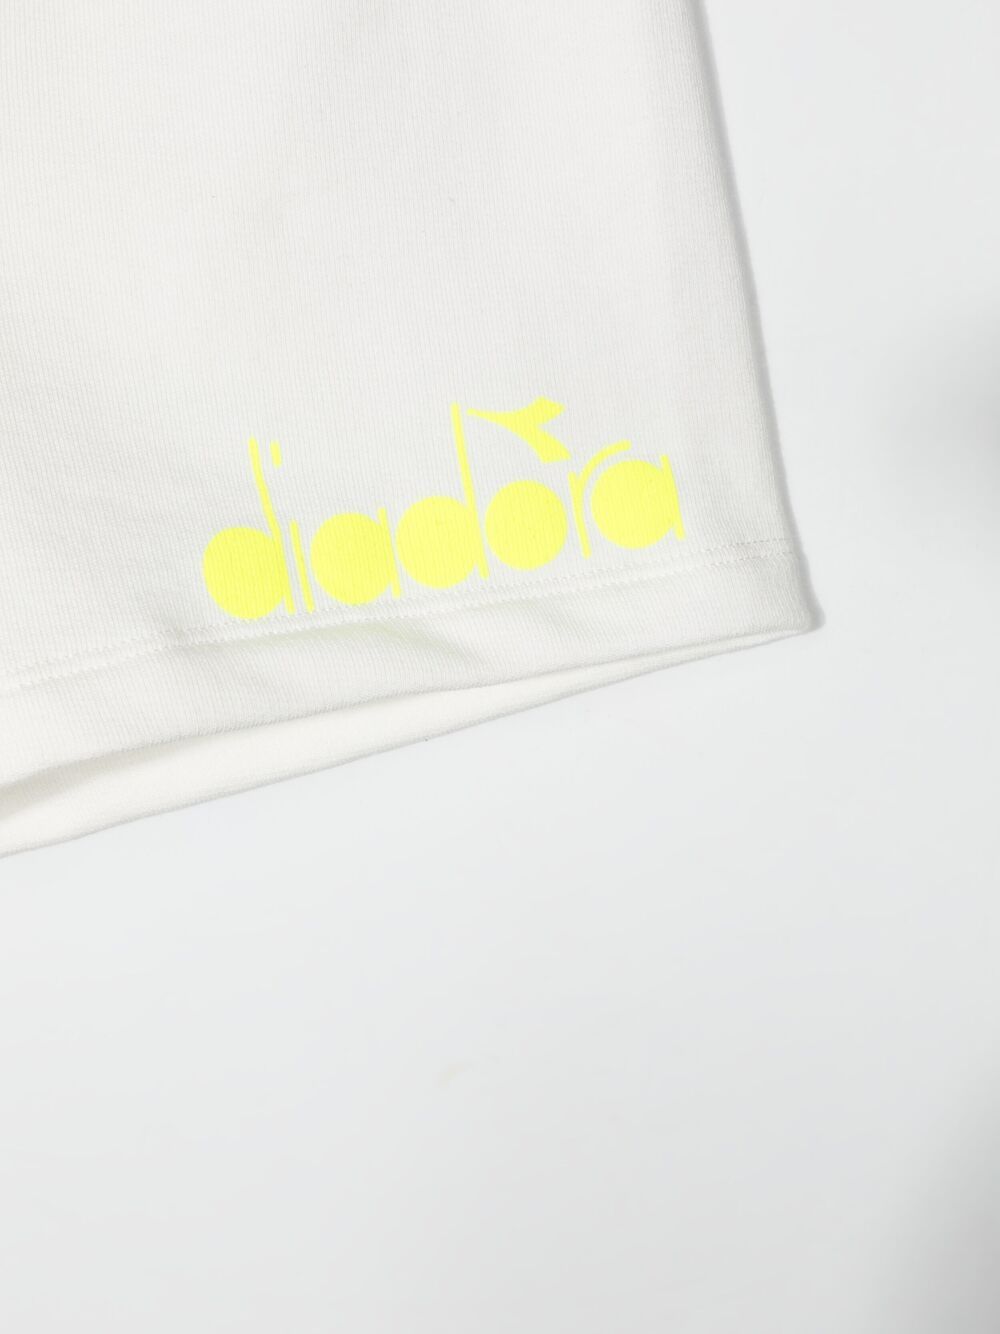 фото Diadora junior шорты с контрастным поясом и логотипом